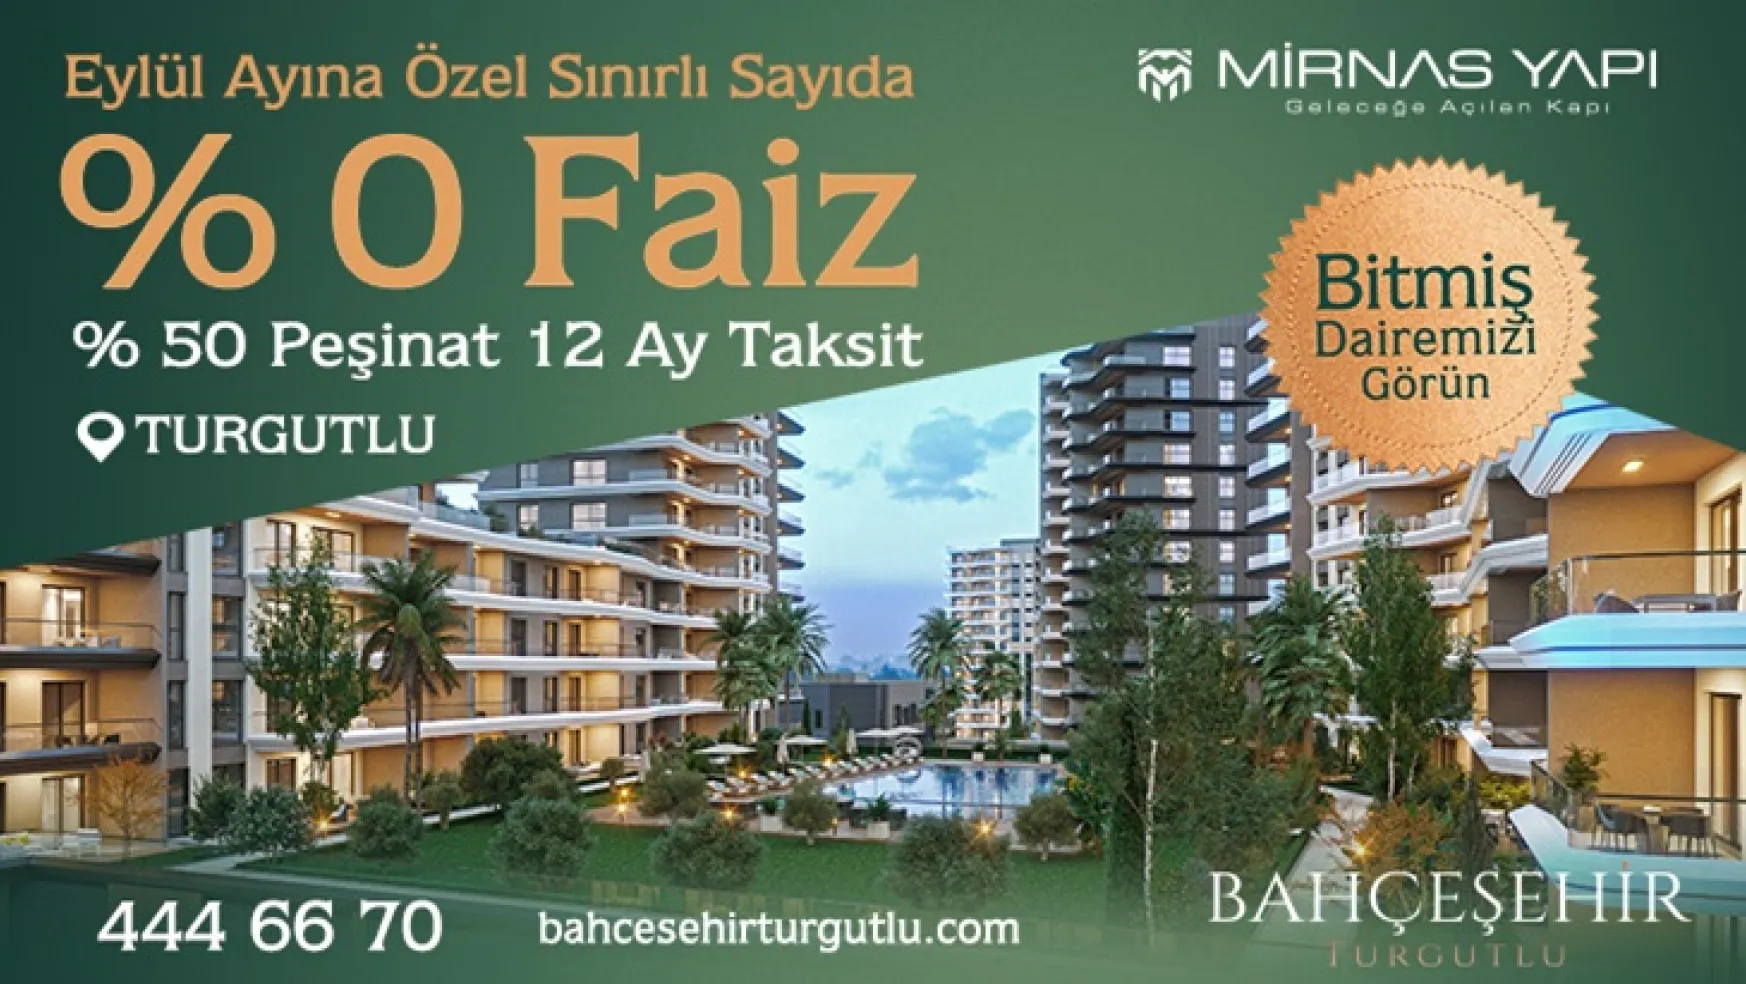 Mirnas Yapı, 1,5 milyar TL yatırımla Bahçeşehir Turgutlu'yu inşa ediyor!